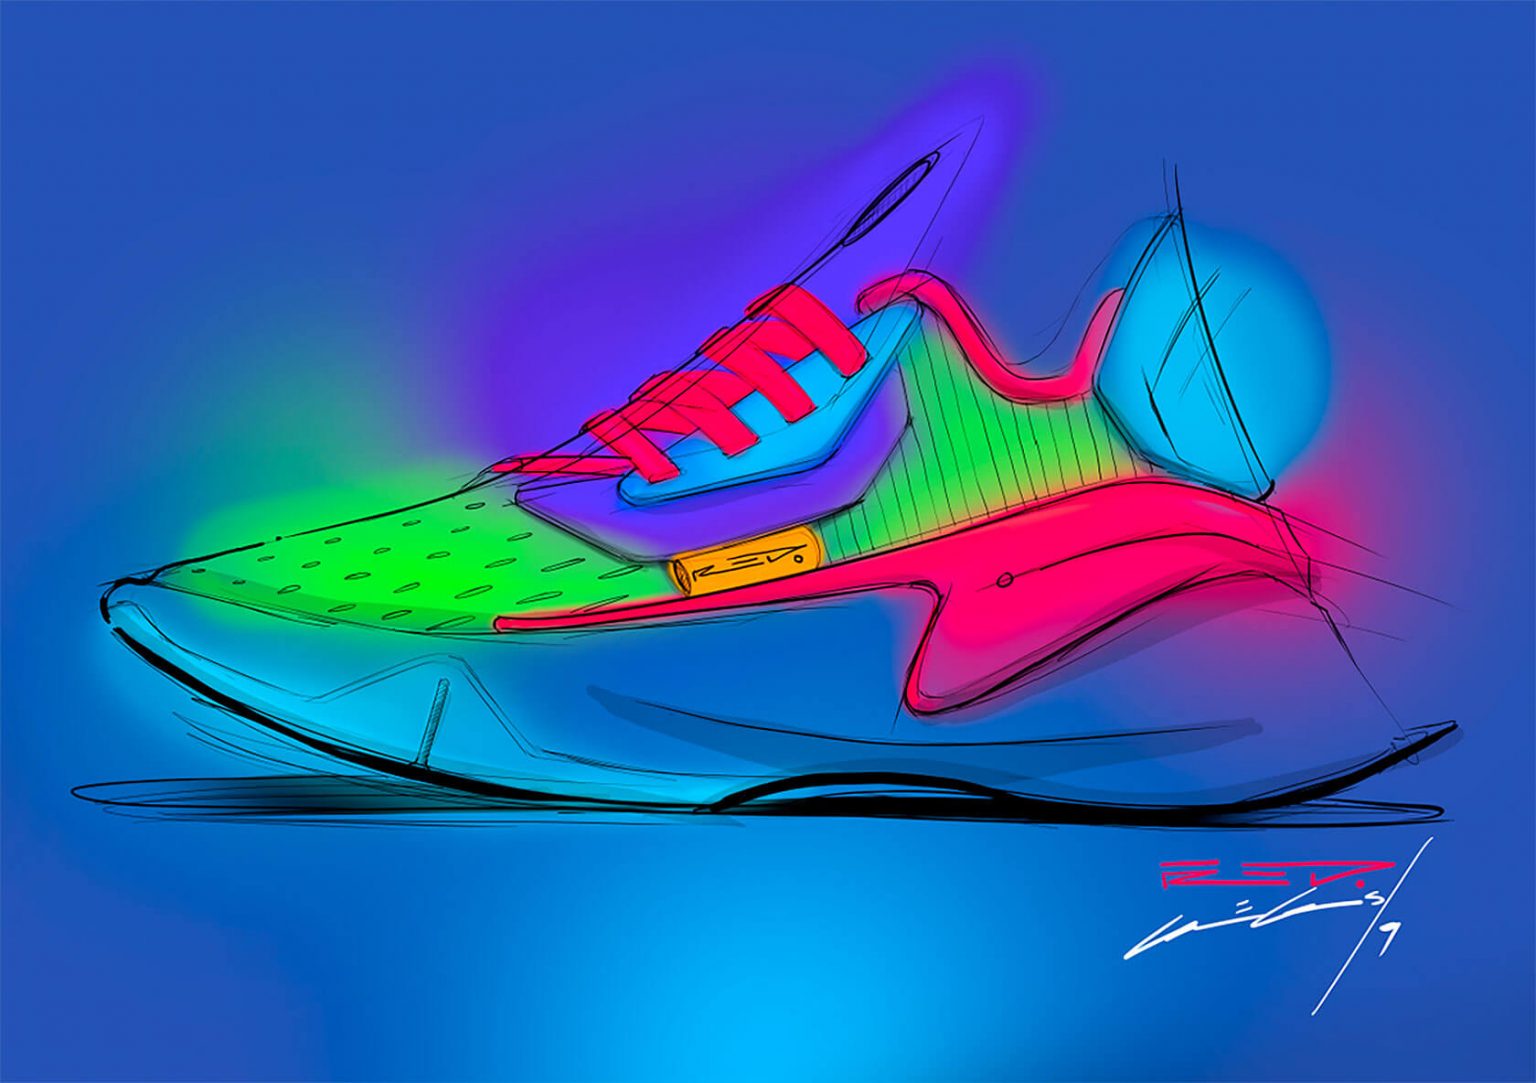 未来主义风格的概念运动鞋设计